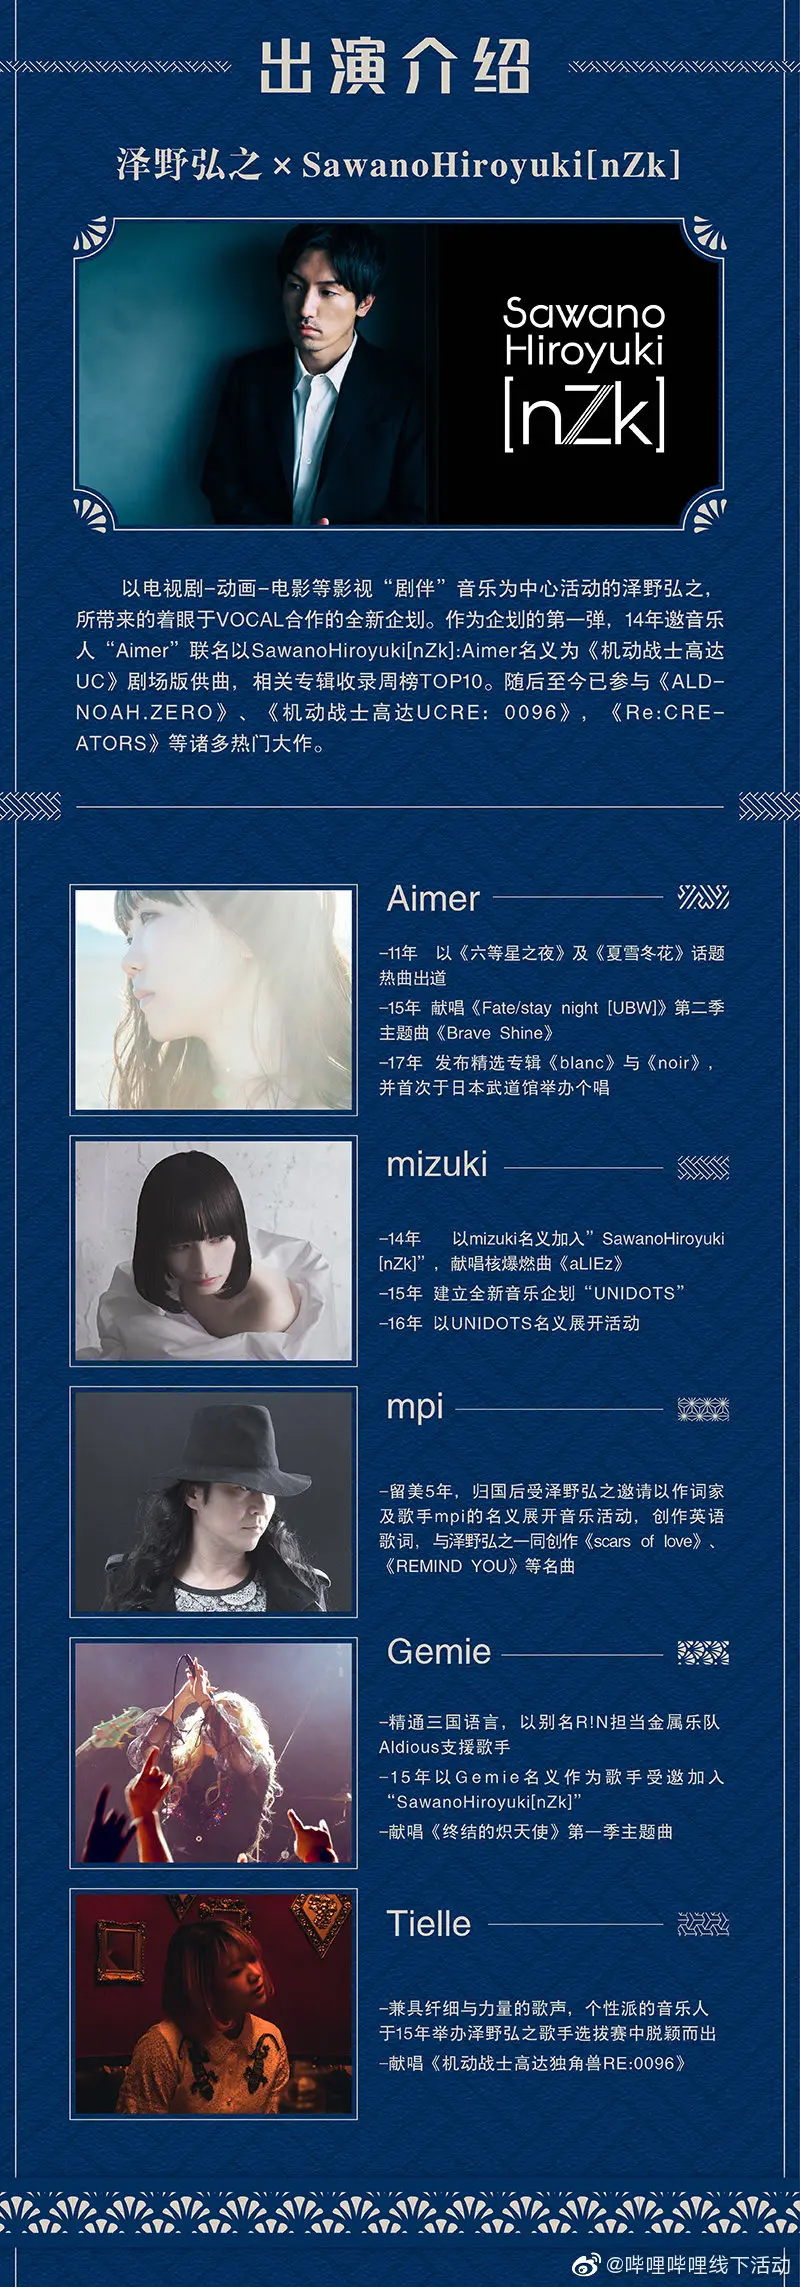 [20200411]泽野弘之2019上海演唱会「SawanoHiroyuki LIVE[nZk] in Shanghai 2019」